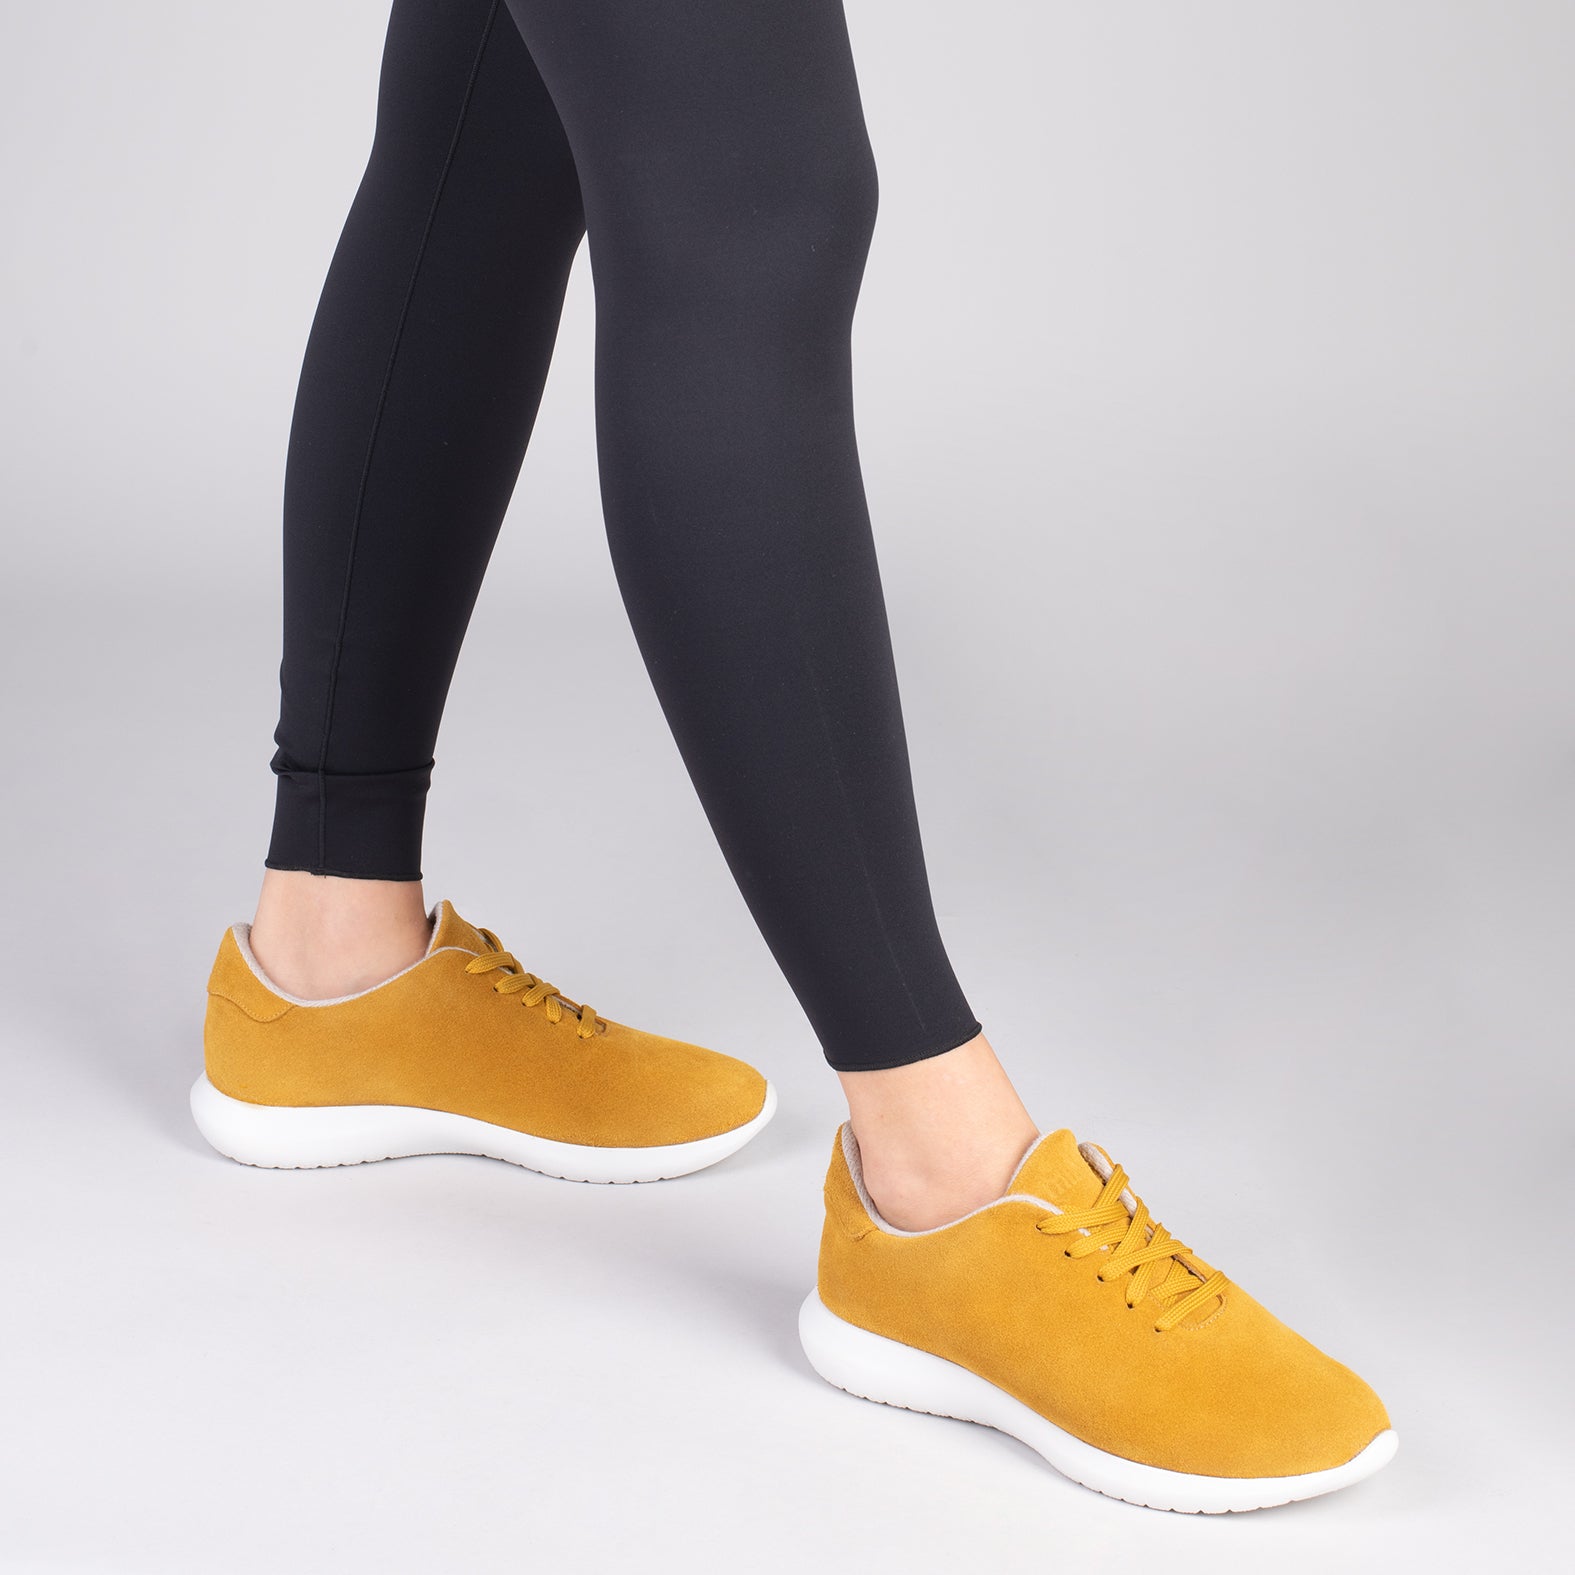 WALK – Zapatillas cómodas de mujer AMARILLO